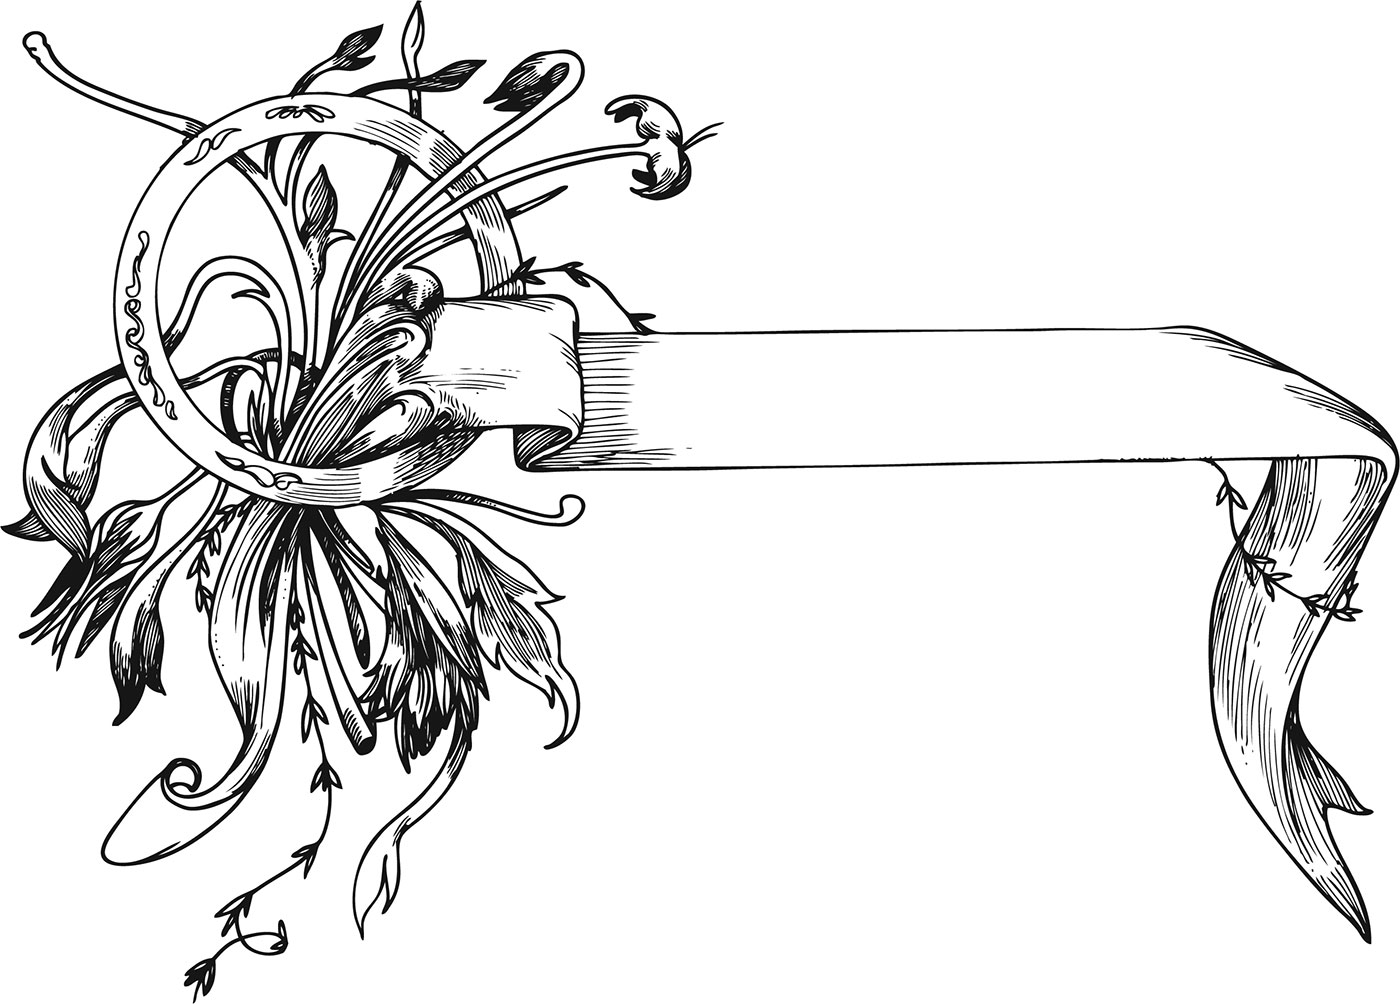 白黒 モノクロの花のイラスト フリー素材 フレーム枠no 799 白黒 茎葉 リボン 輪